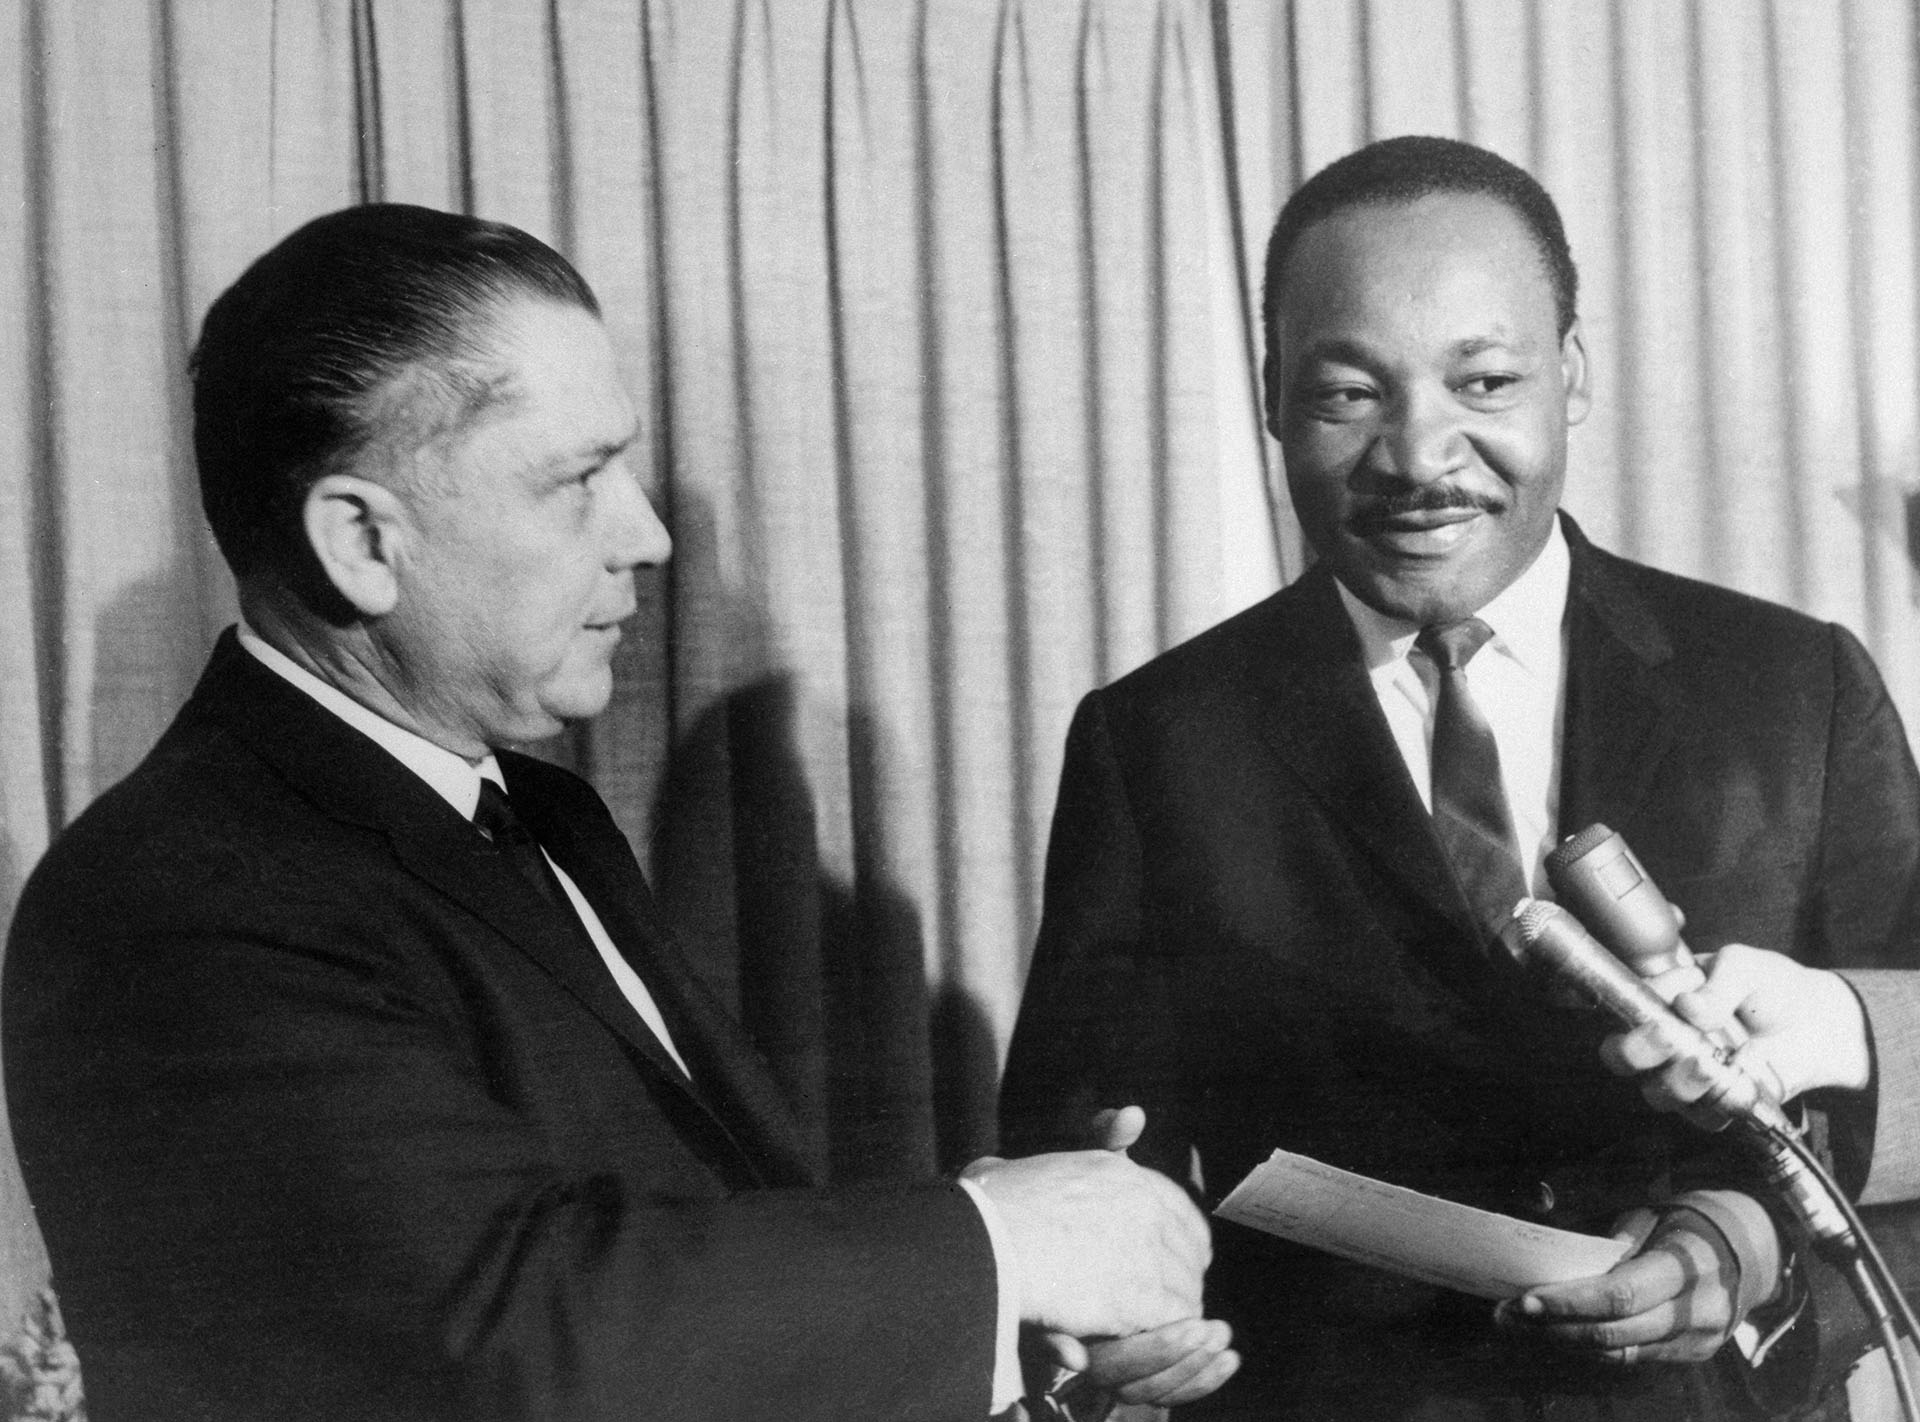 El su función de presidente de la Teamsters Union James R. Hoffa le entregaba 25 mil dólares a Martin Luther King, Jr., como ayuda para la lucha por los derechos civiles